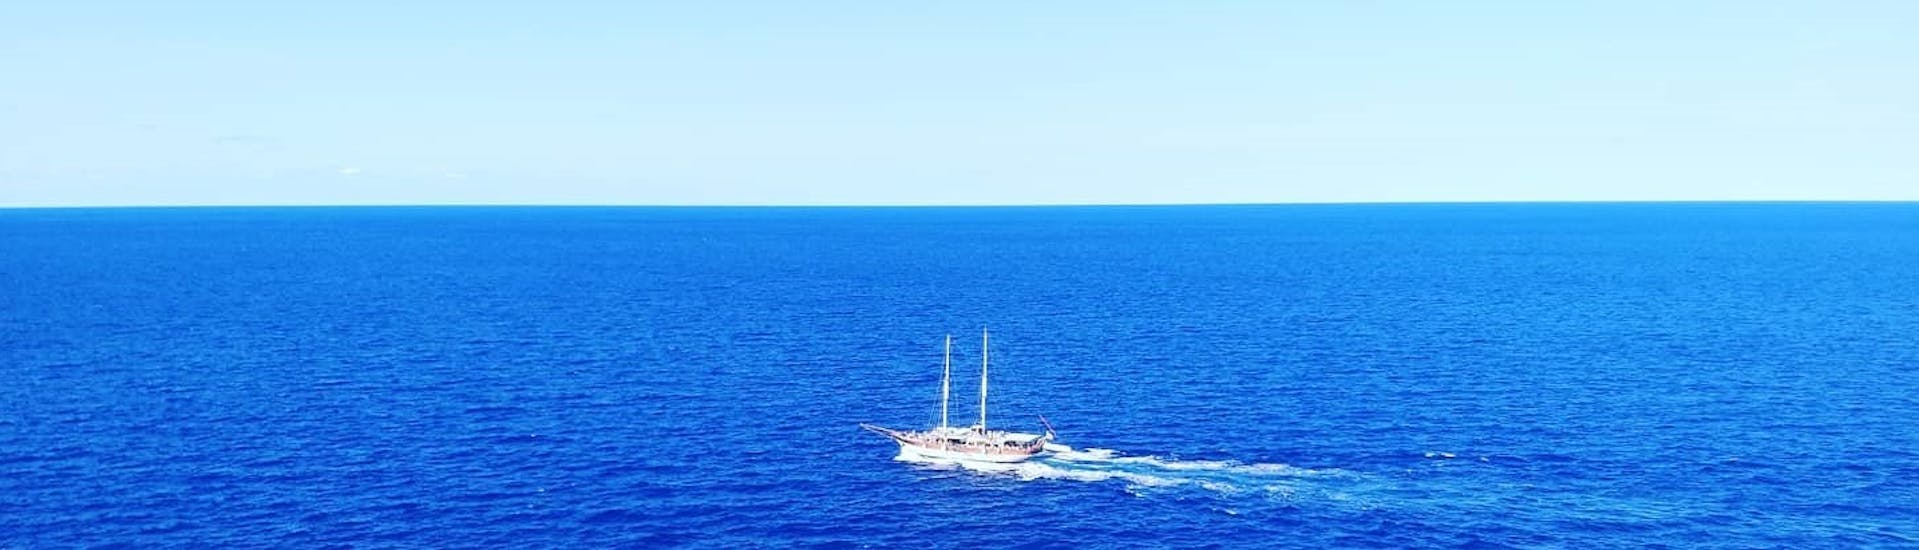 Notre bateau navigue lors d'une Balade privée en bateau aux îles de Comino & Gozo avec Snorkeling avec Outdoor Explorers.